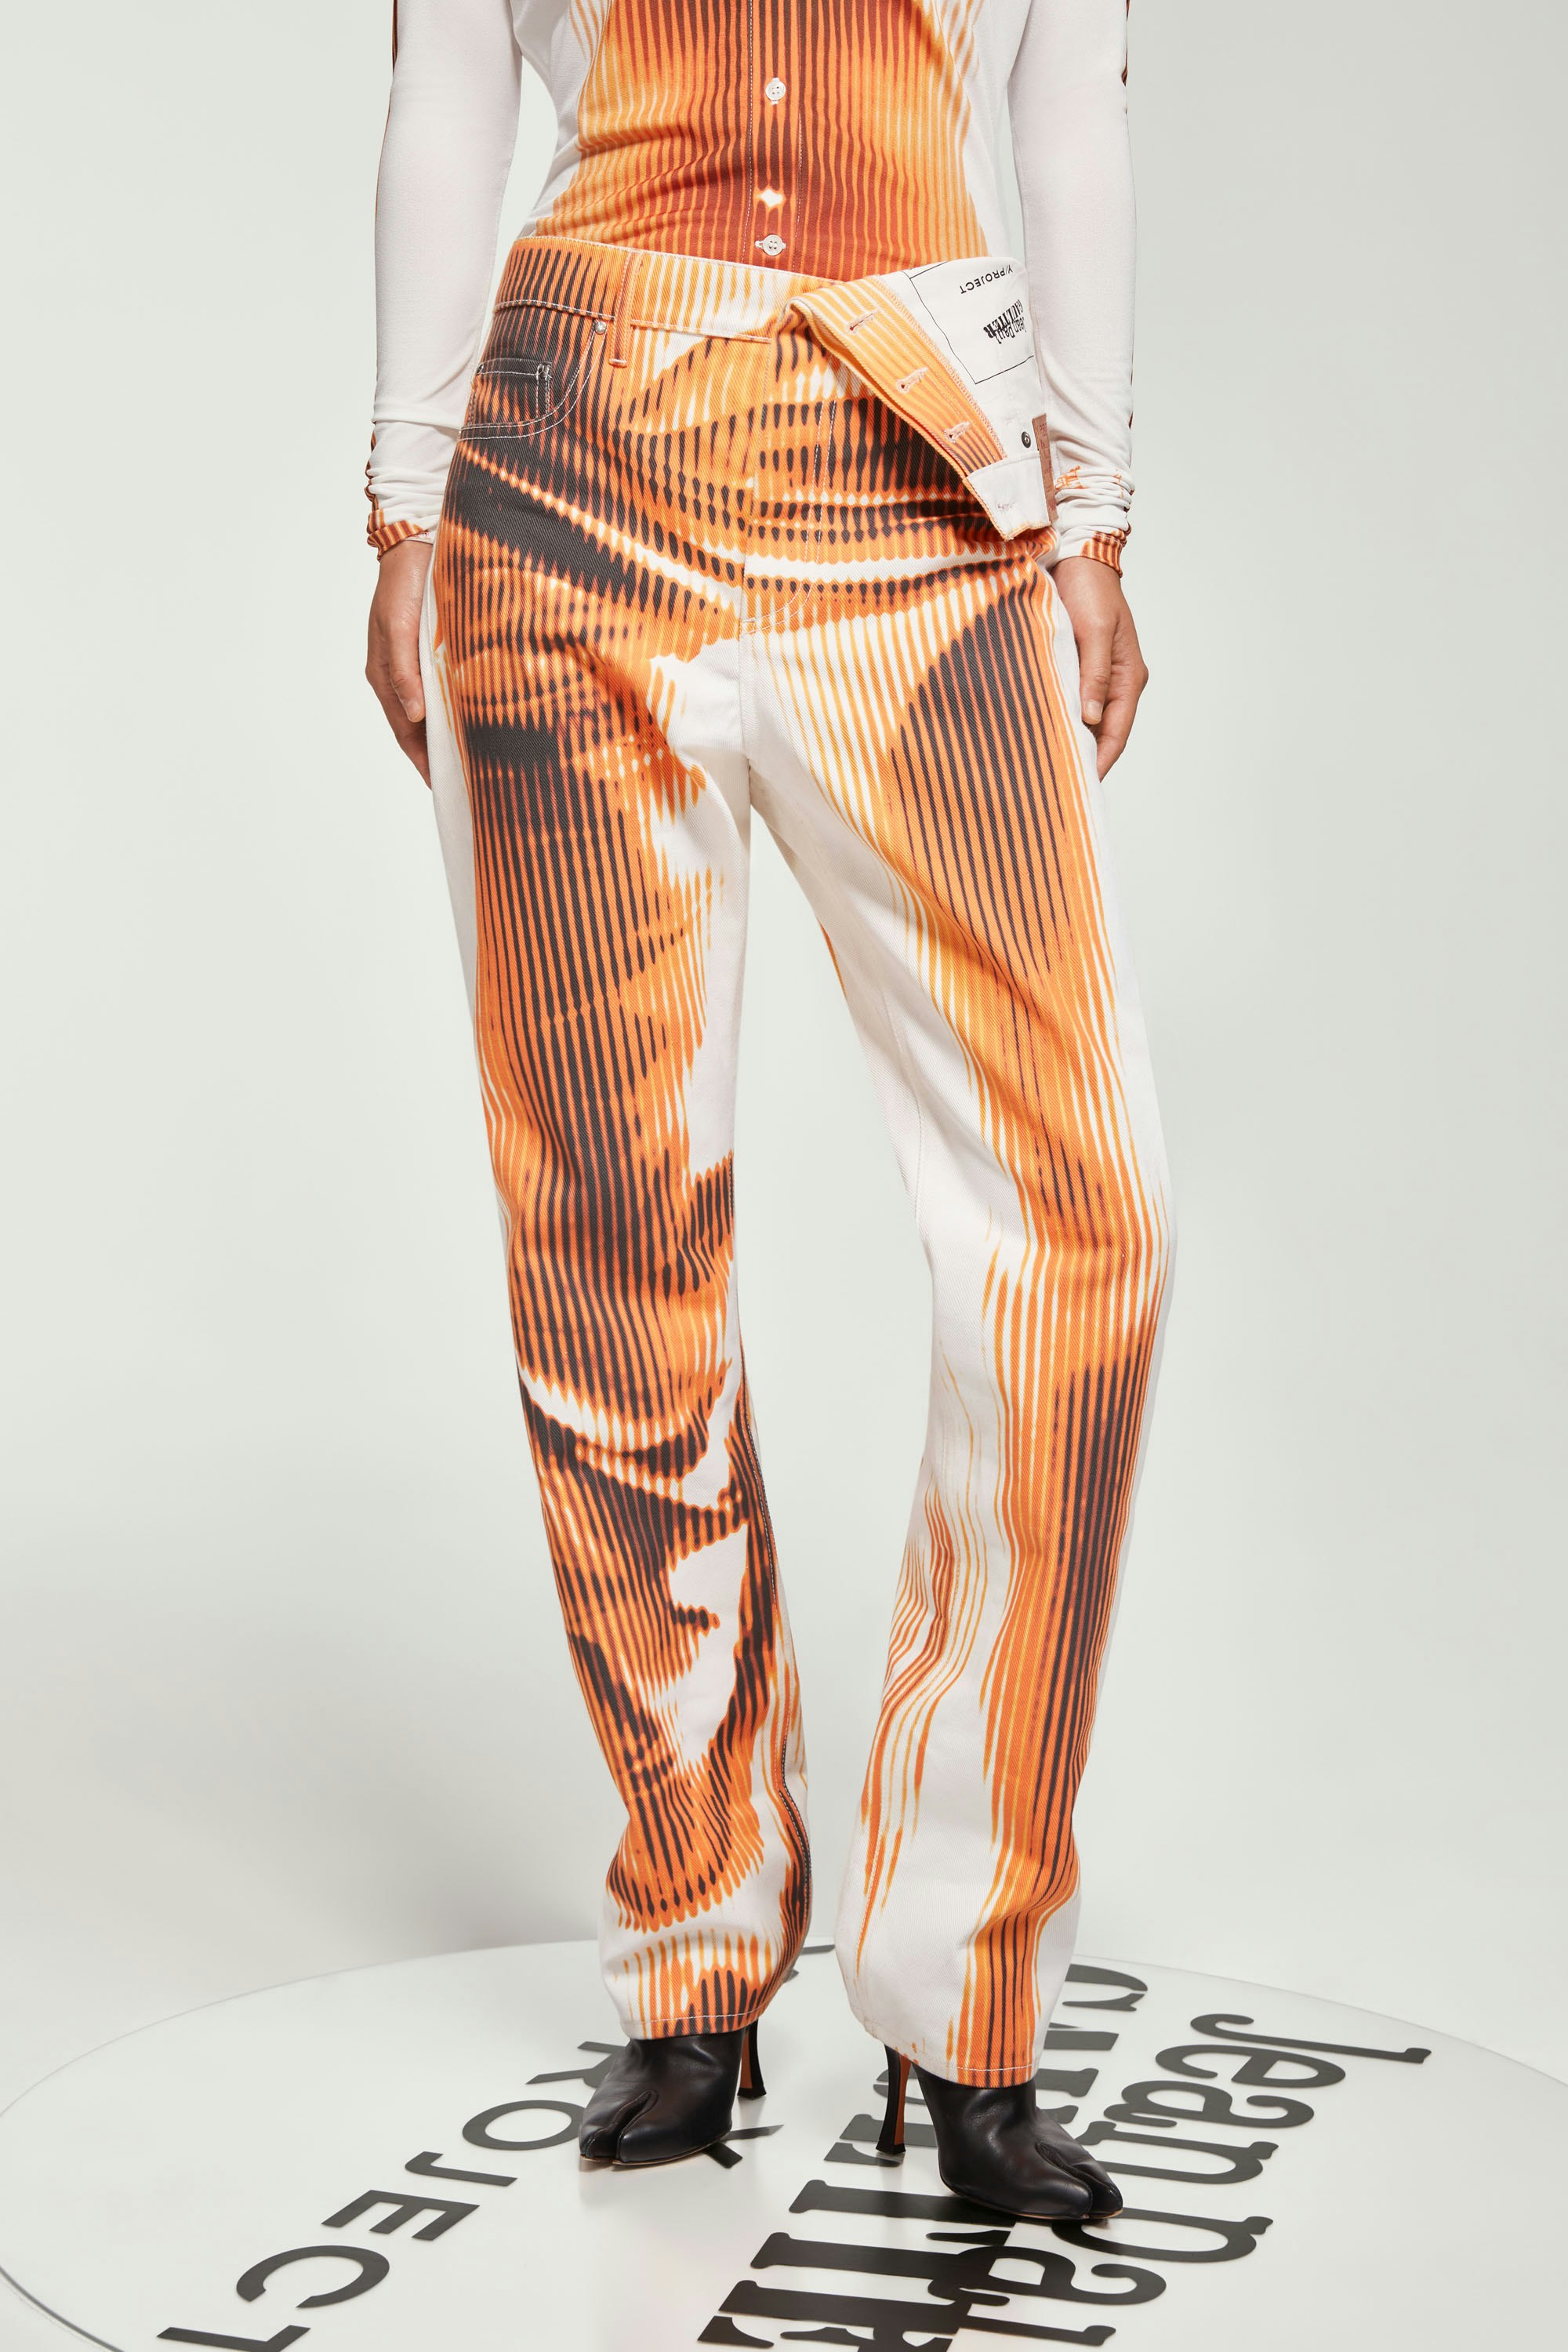 The White & Orange Body Morph Asymmetric Denim by Jean Paul Gaultier x Y/Project